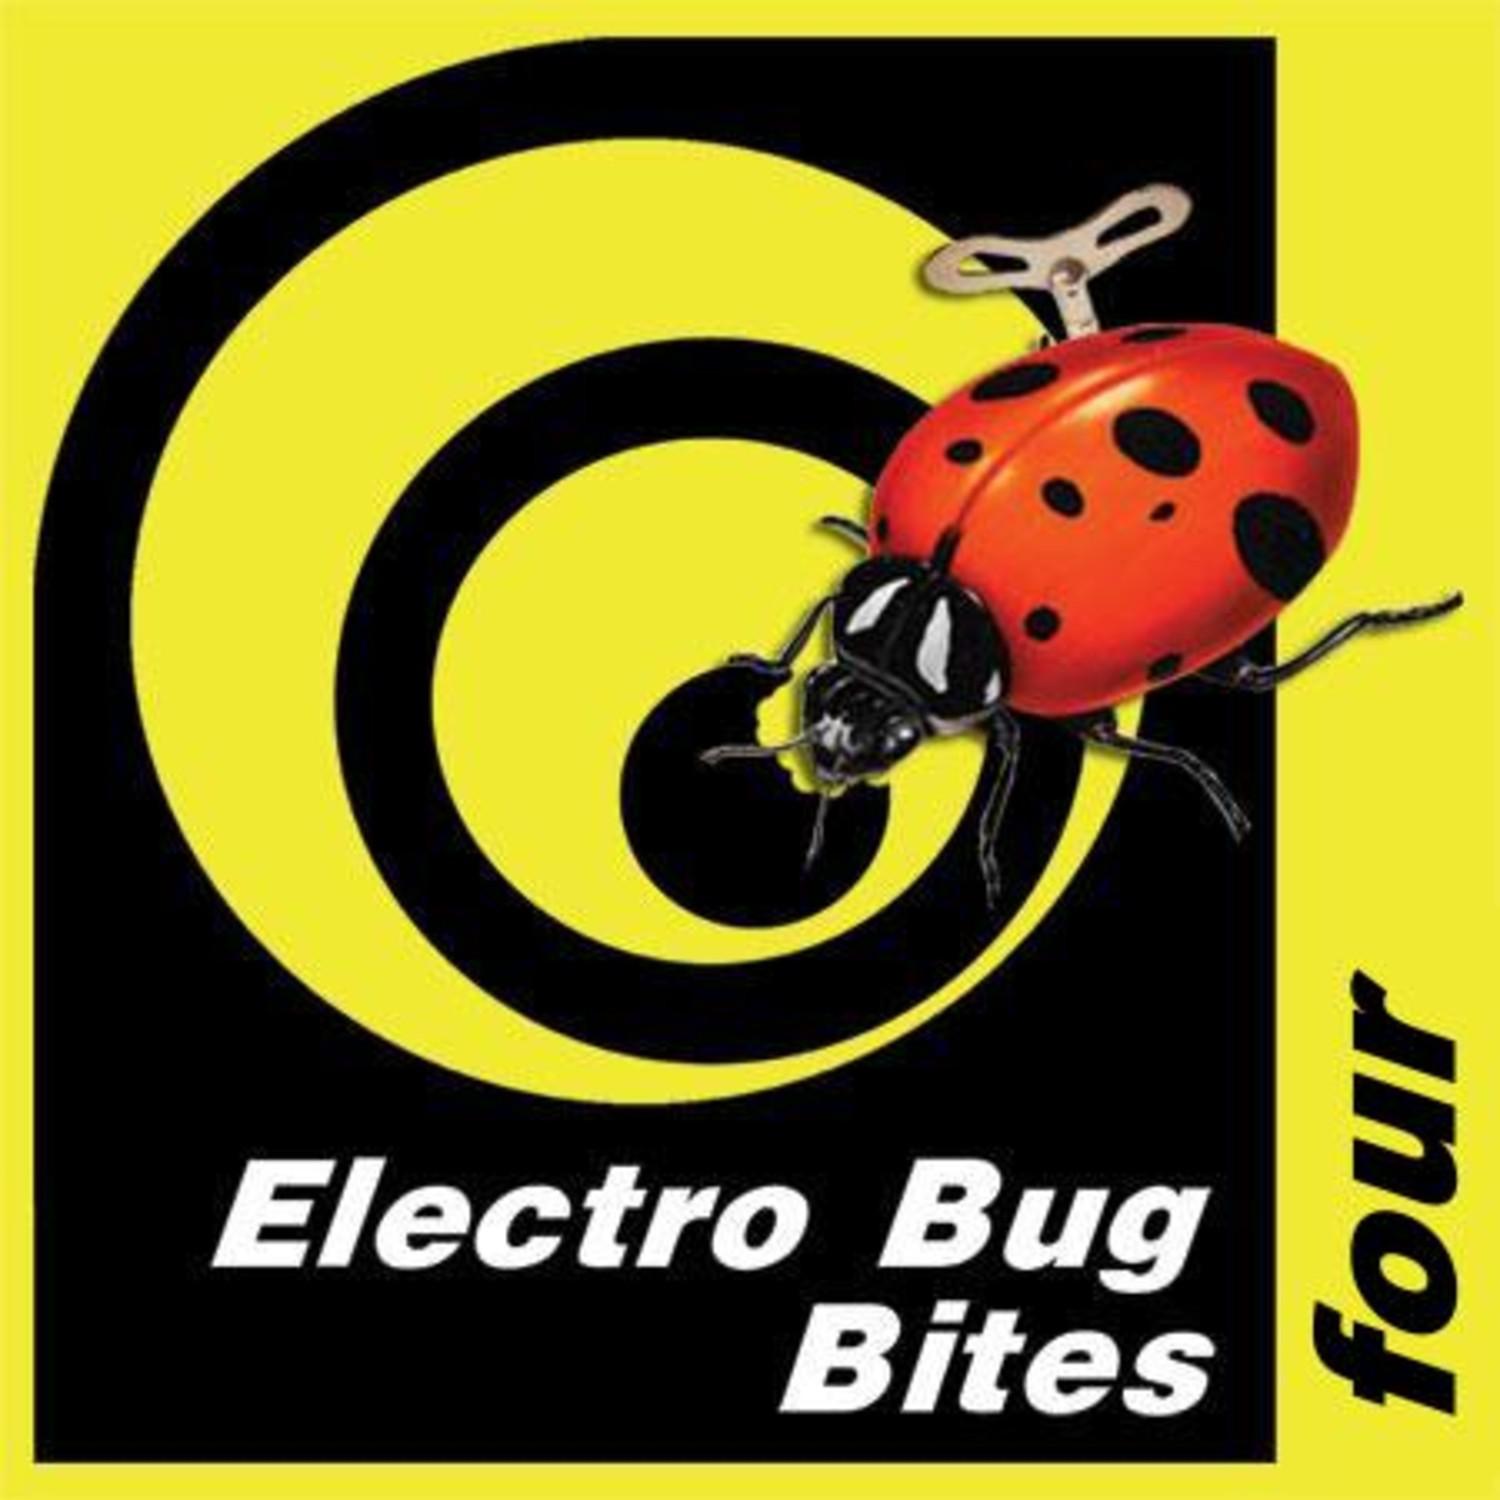 Electro Bug Bites Four